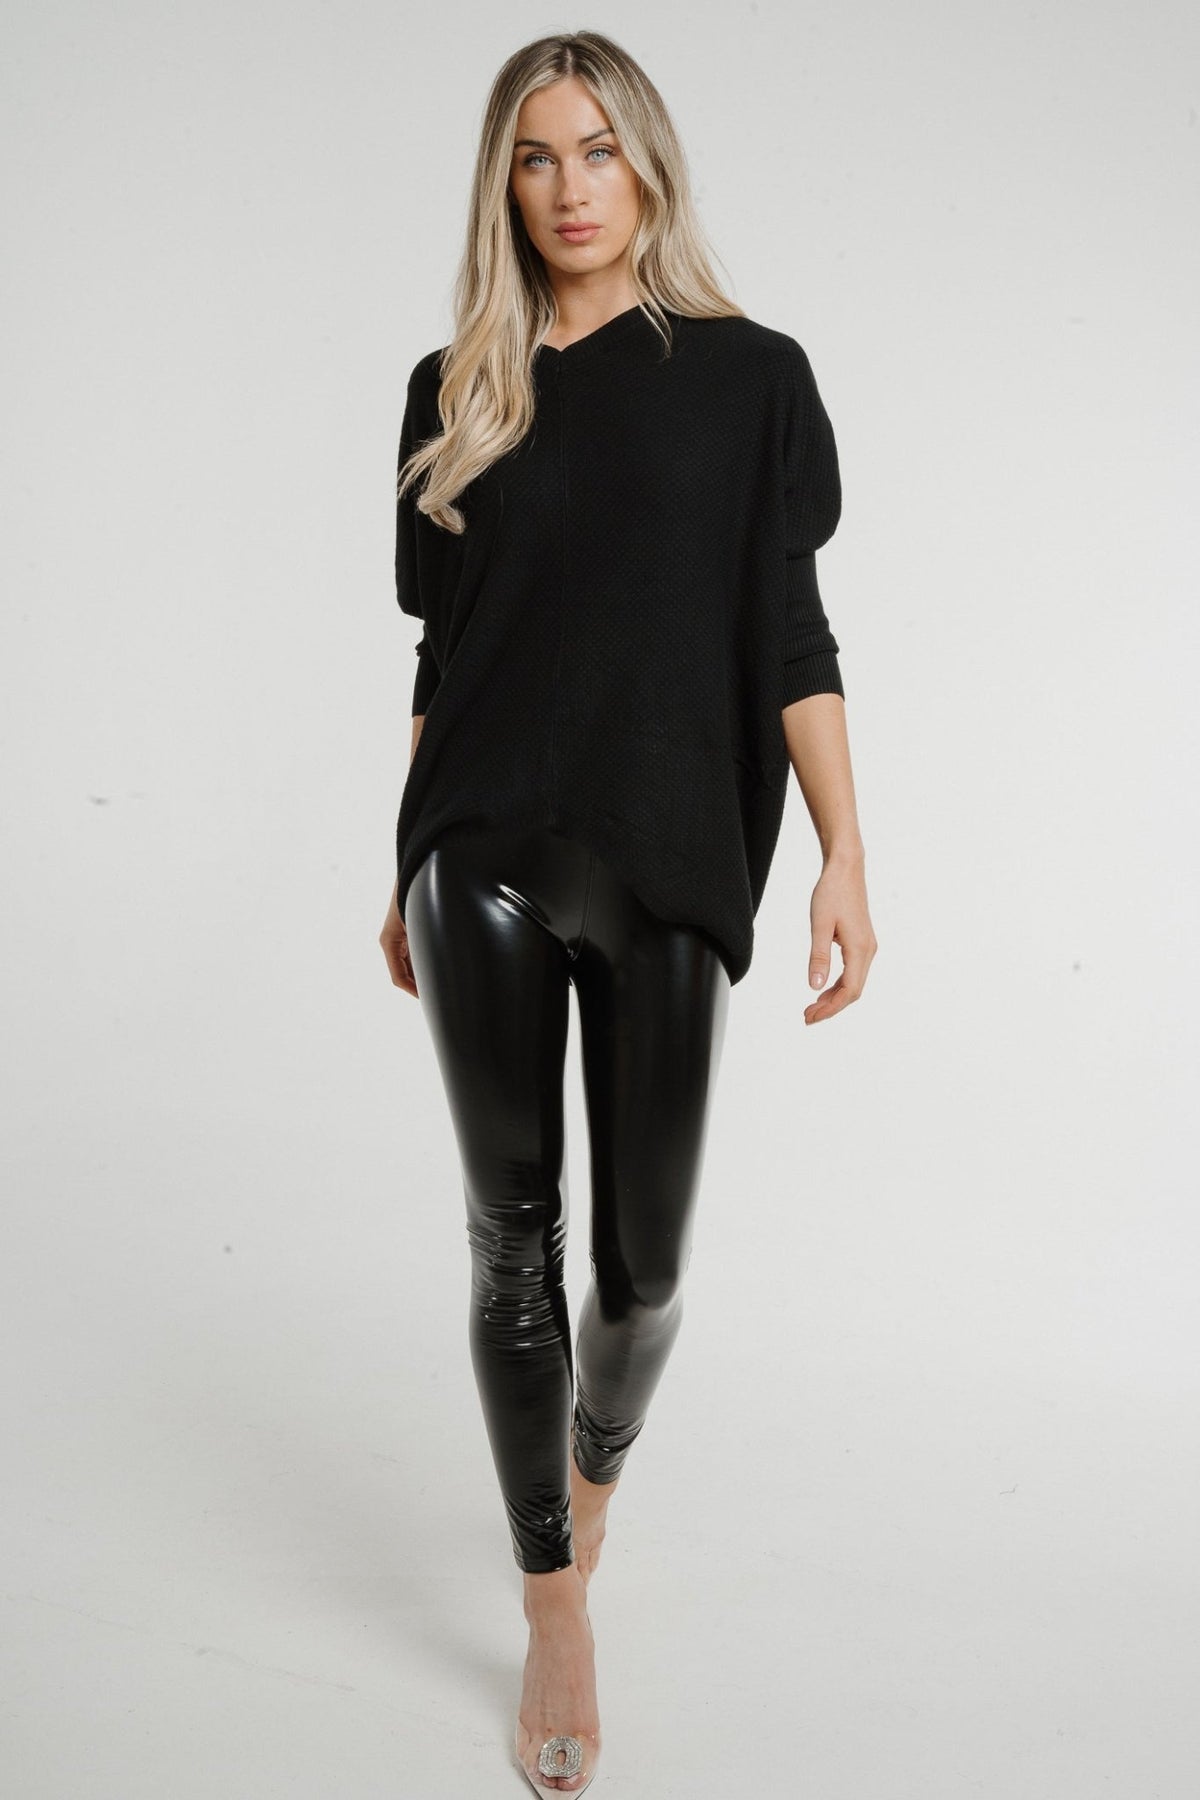 Freya Wet Look Faux Leather Legging In Black - The Walk in Wardrobe